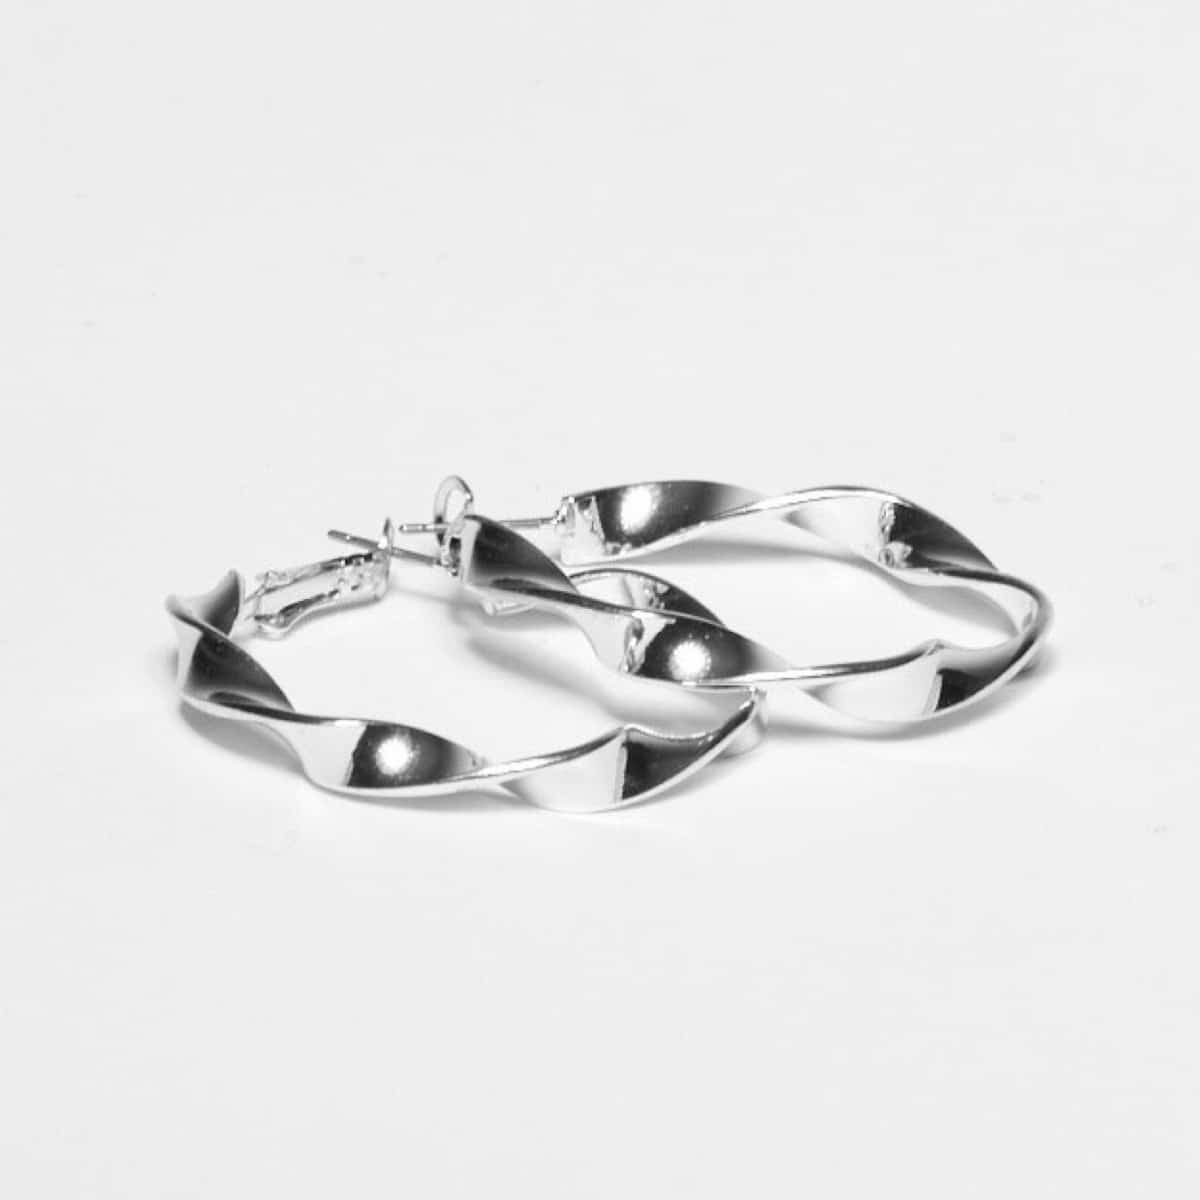 Omslagsbild för “Örhängen Julia ring silver”